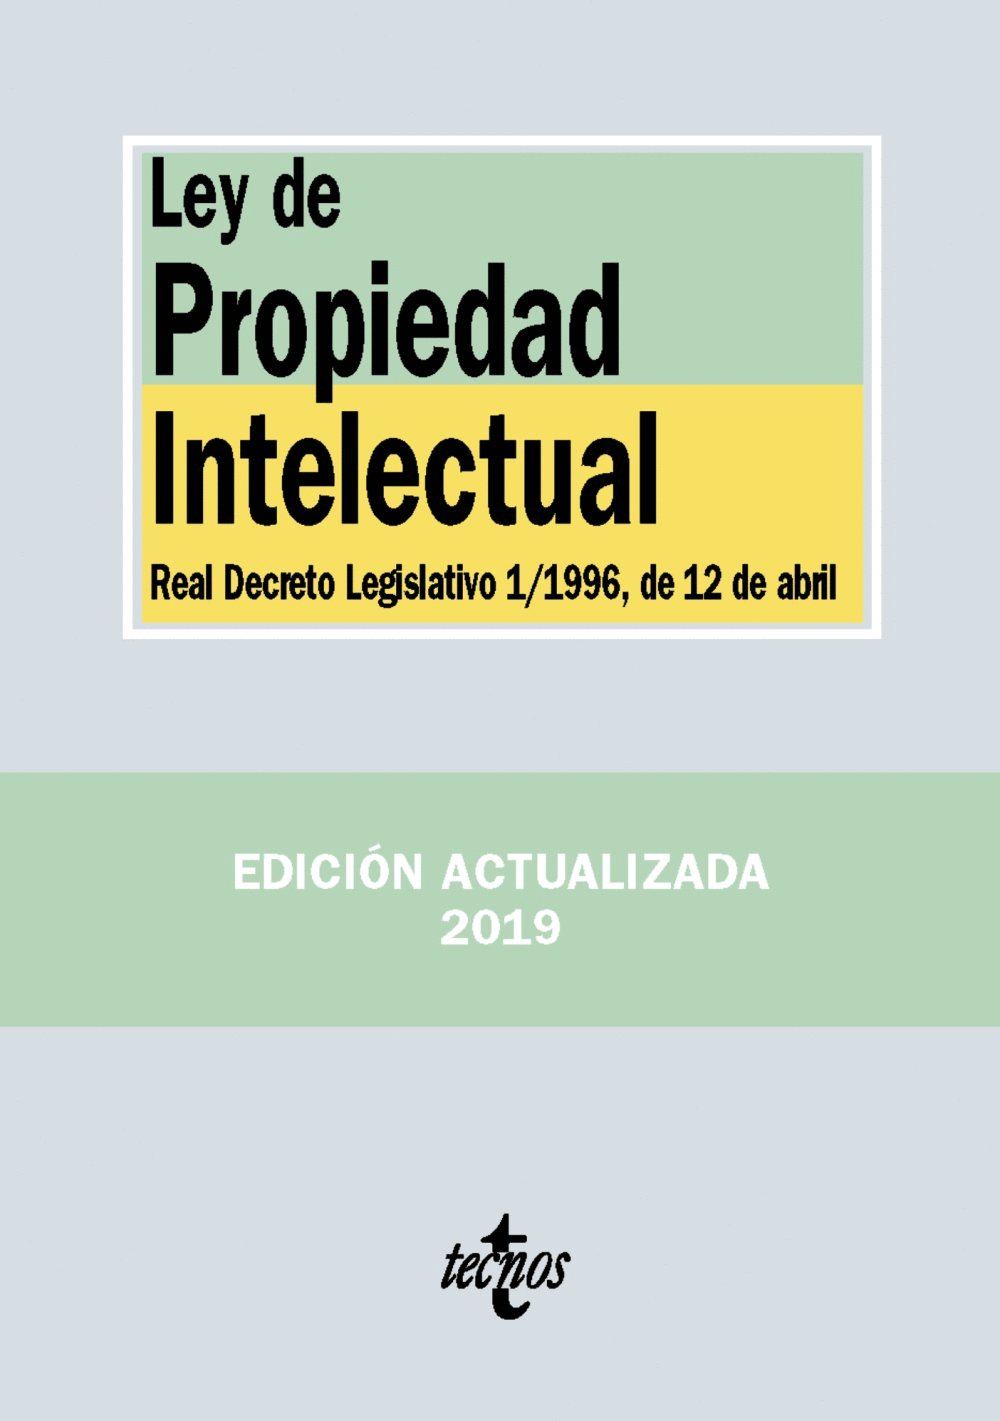 LEY DE PROPIEDAD INTELECTUAL 2019